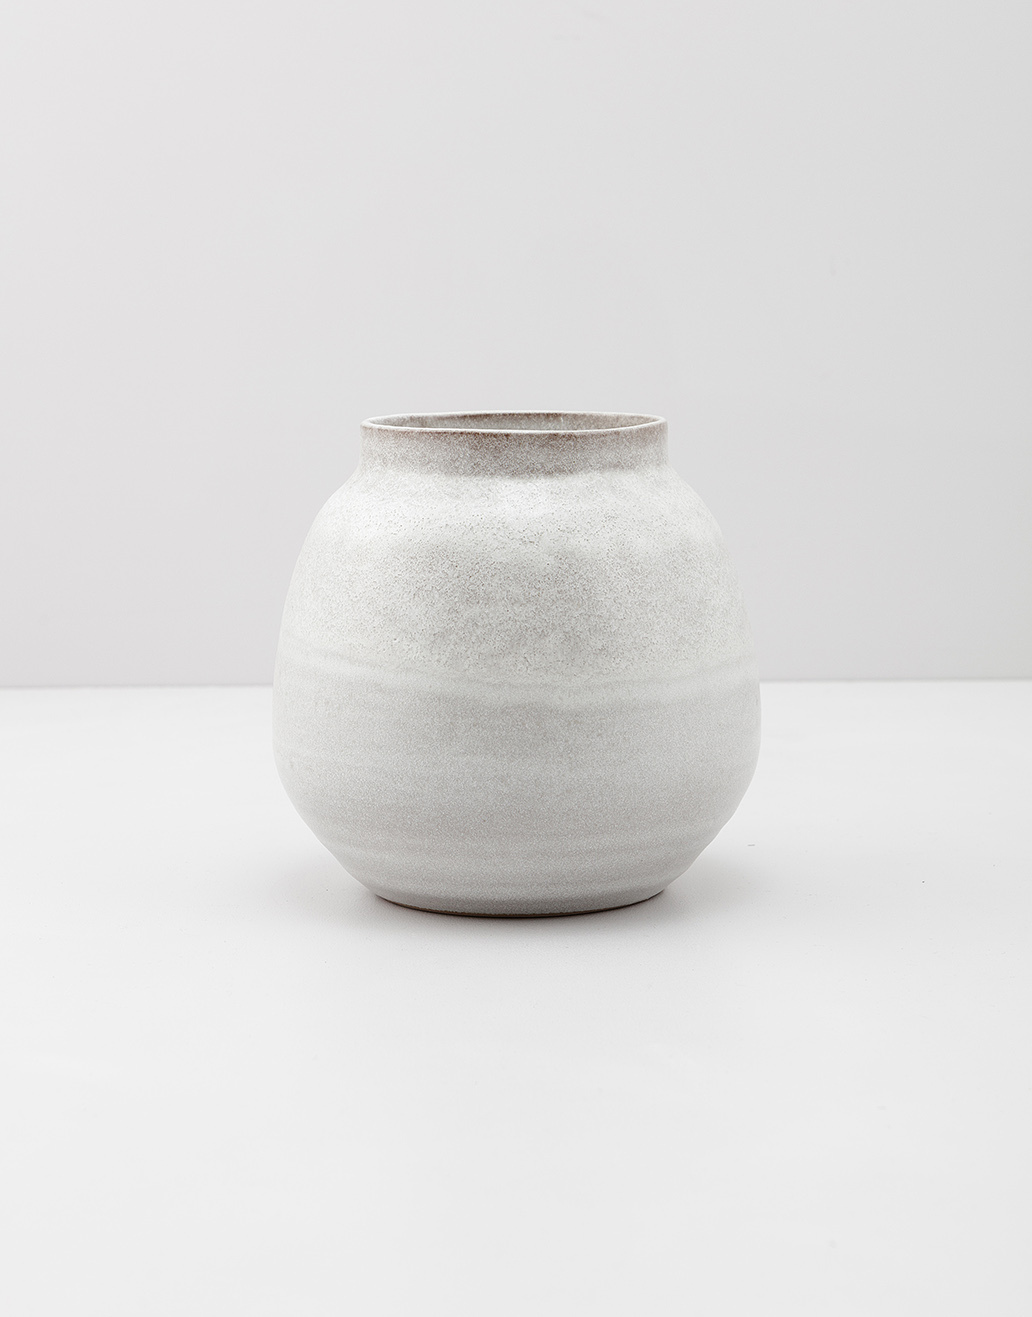 Medium sized ceramic vase